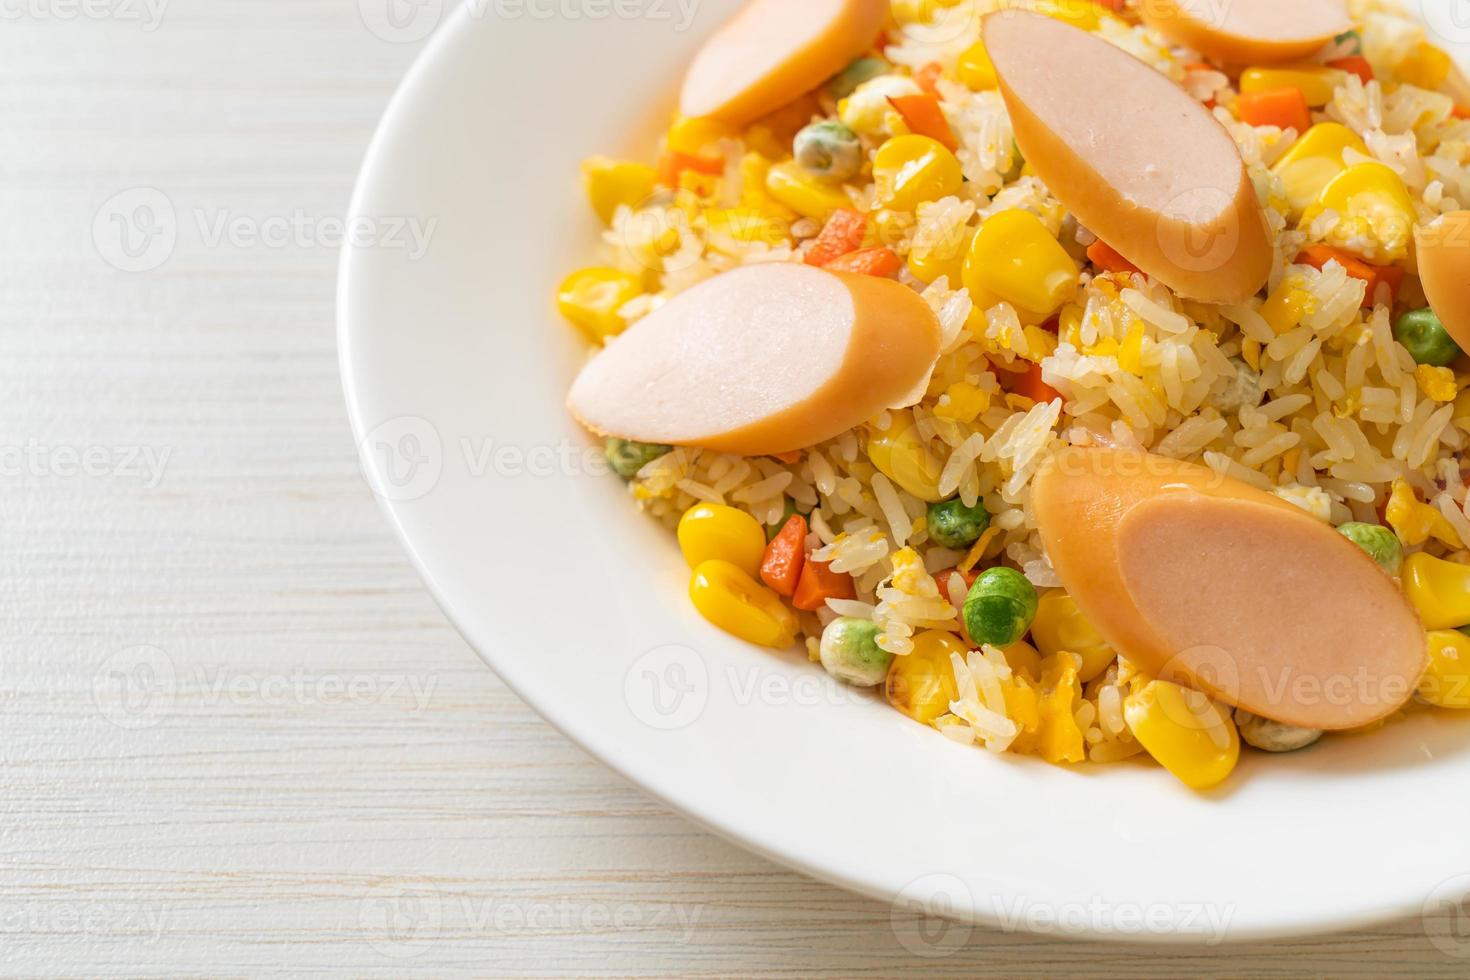 arroz frito com linguiça e vegetais mistos foto